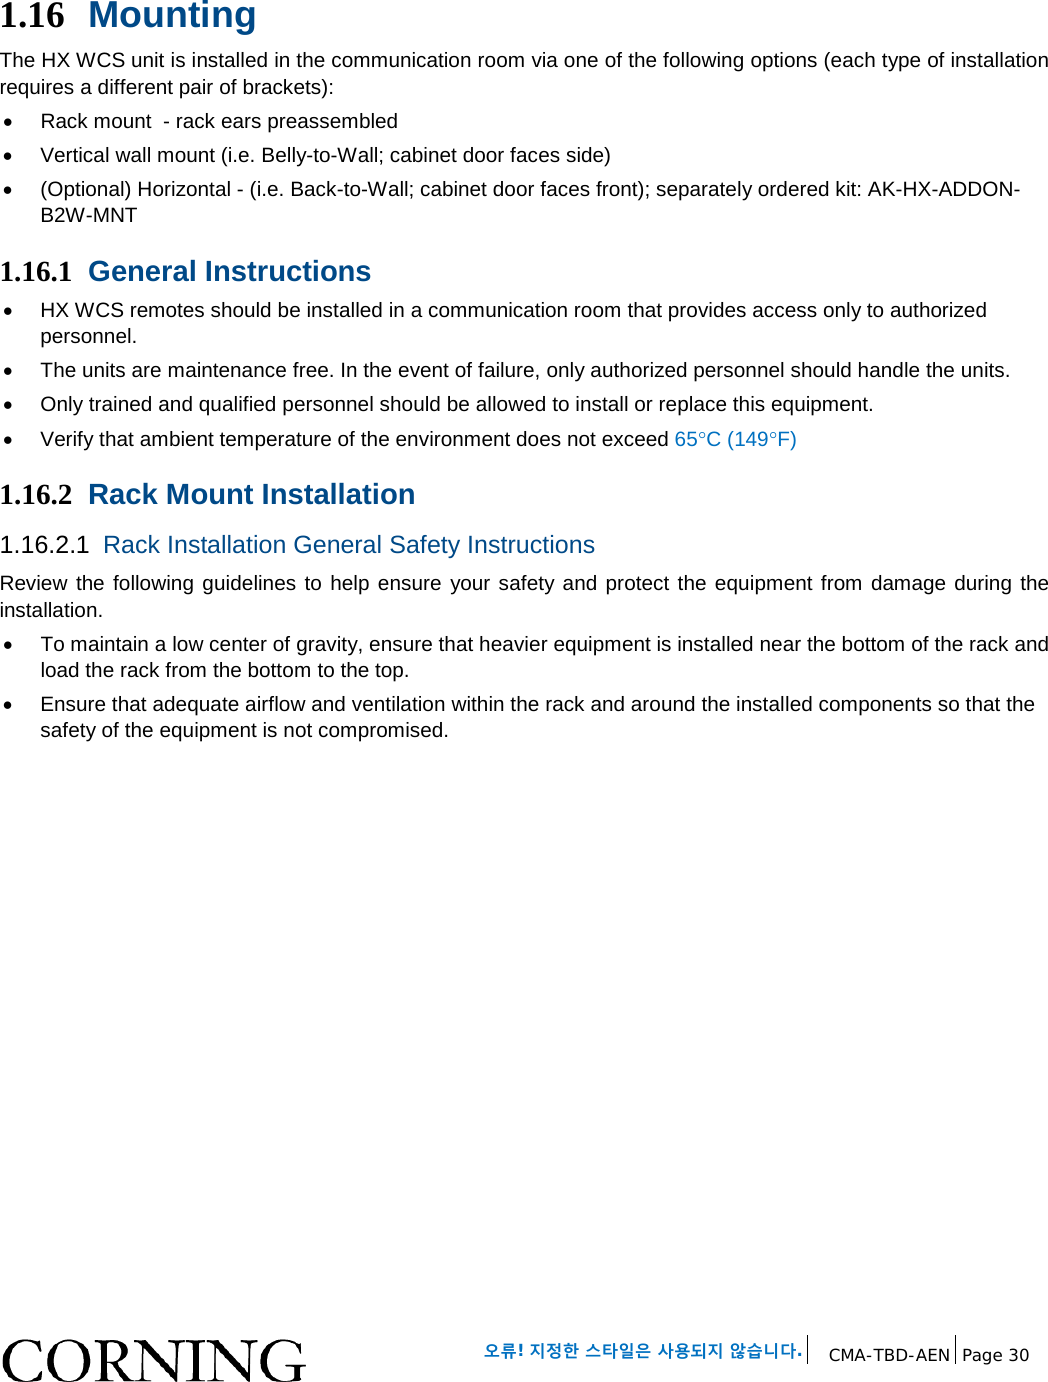   오류! 지정한 스타일은 사용되지 않습니다. CMA-TBD-AEN Page 30   1.16 Mounting  The HX WCS unit is installed in the communication room via one of the following options (each type of installation requires a different pair of brackets): • Rack mount  - rack ears preassembled • Vertical wall mount (i.e. Belly-to-Wall; cabinet door faces side)  • (Optional) Horizontal - (i.e. Back-to-Wall; cabinet door faces front); separately ordered kit: AK-HX-ADDON-B2W-MNT 1.16.1 General Instructions • HX WCS remotes should be installed in a communication room that provides access only to authorized personnel.   • The units are maintenance free. In the event of failure, only authorized personnel should handle the units. • Only trained and qualified personnel should be allowed to install or replace this equipment. • Verify that ambient temperature of the environment does not exceed 65°C (149°F) 1.16.2 Rack Mount Installation 1.16.2.1 Rack Installation General Safety Instructions Review the following guidelines to help ensure your safety and protect the equipment from damage during the installation. • To maintain a low center of gravity, ensure that heavier equipment is installed near the bottom of the rack and load the rack from the bottom to the top.   • Ensure that adequate airflow and ventilation within the rack and around the installed components so that the safety of the equipment is not compromised.   